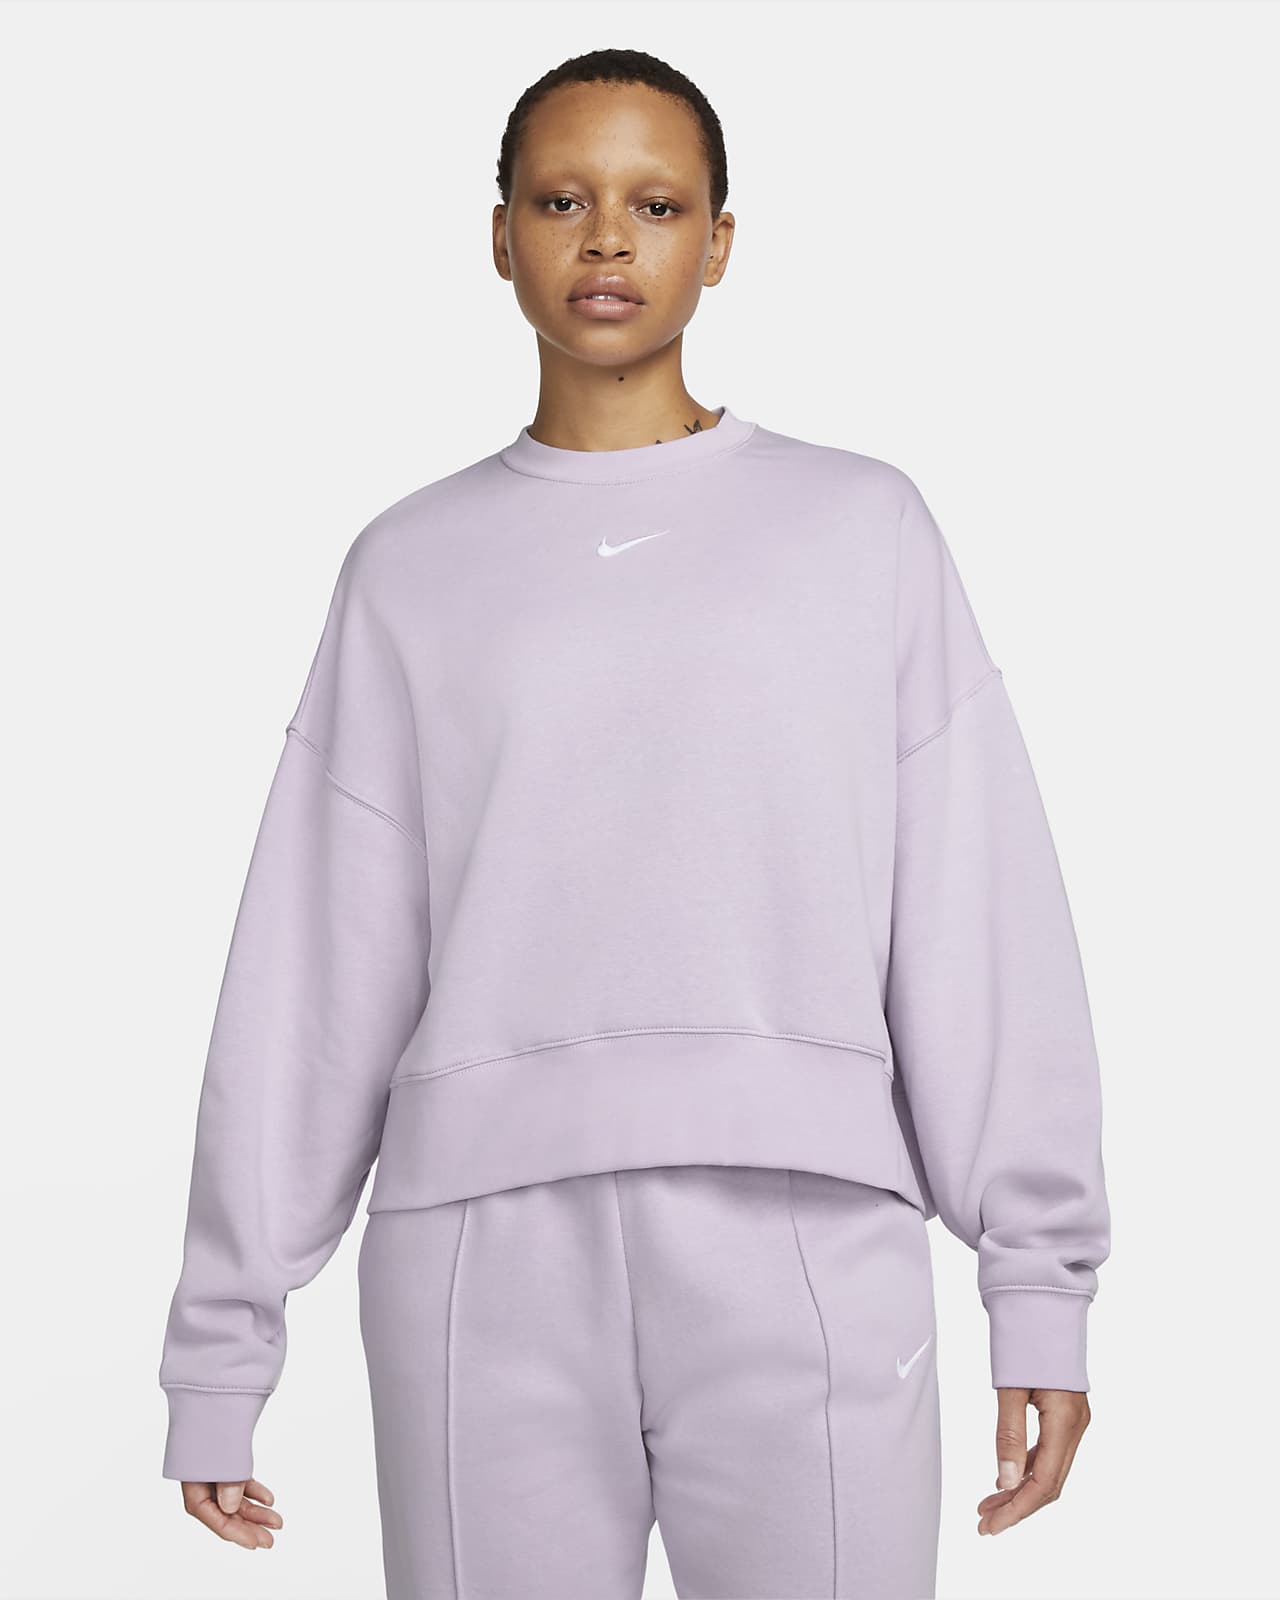 Nike Sportswear Collection Essentials Women's Oversized Fleece Crew  Sweatshirt. Nike IL